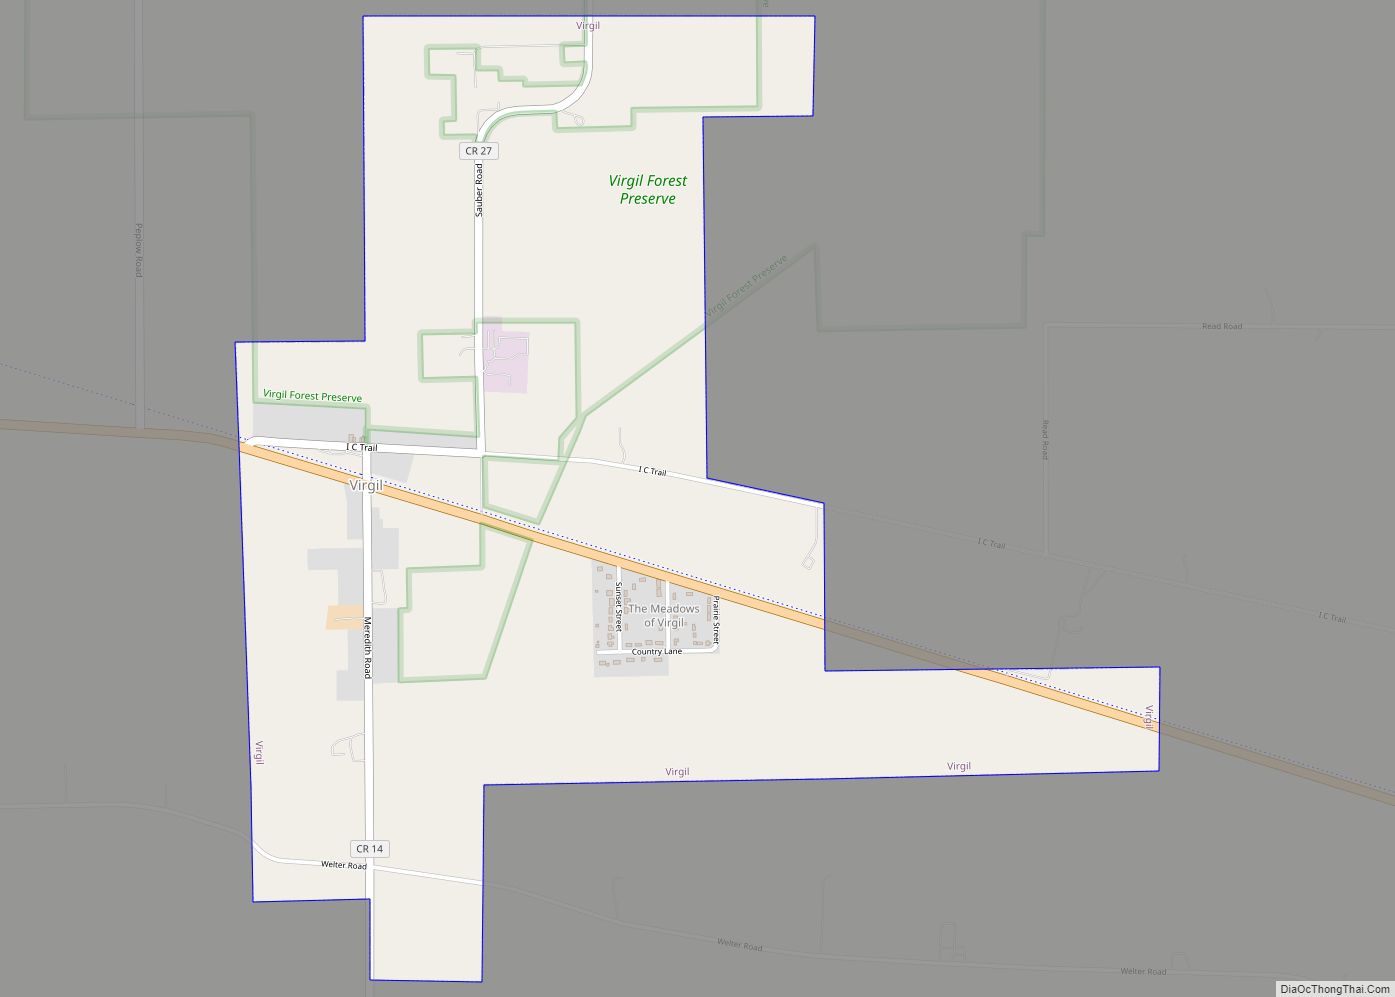 Map of Virgil village